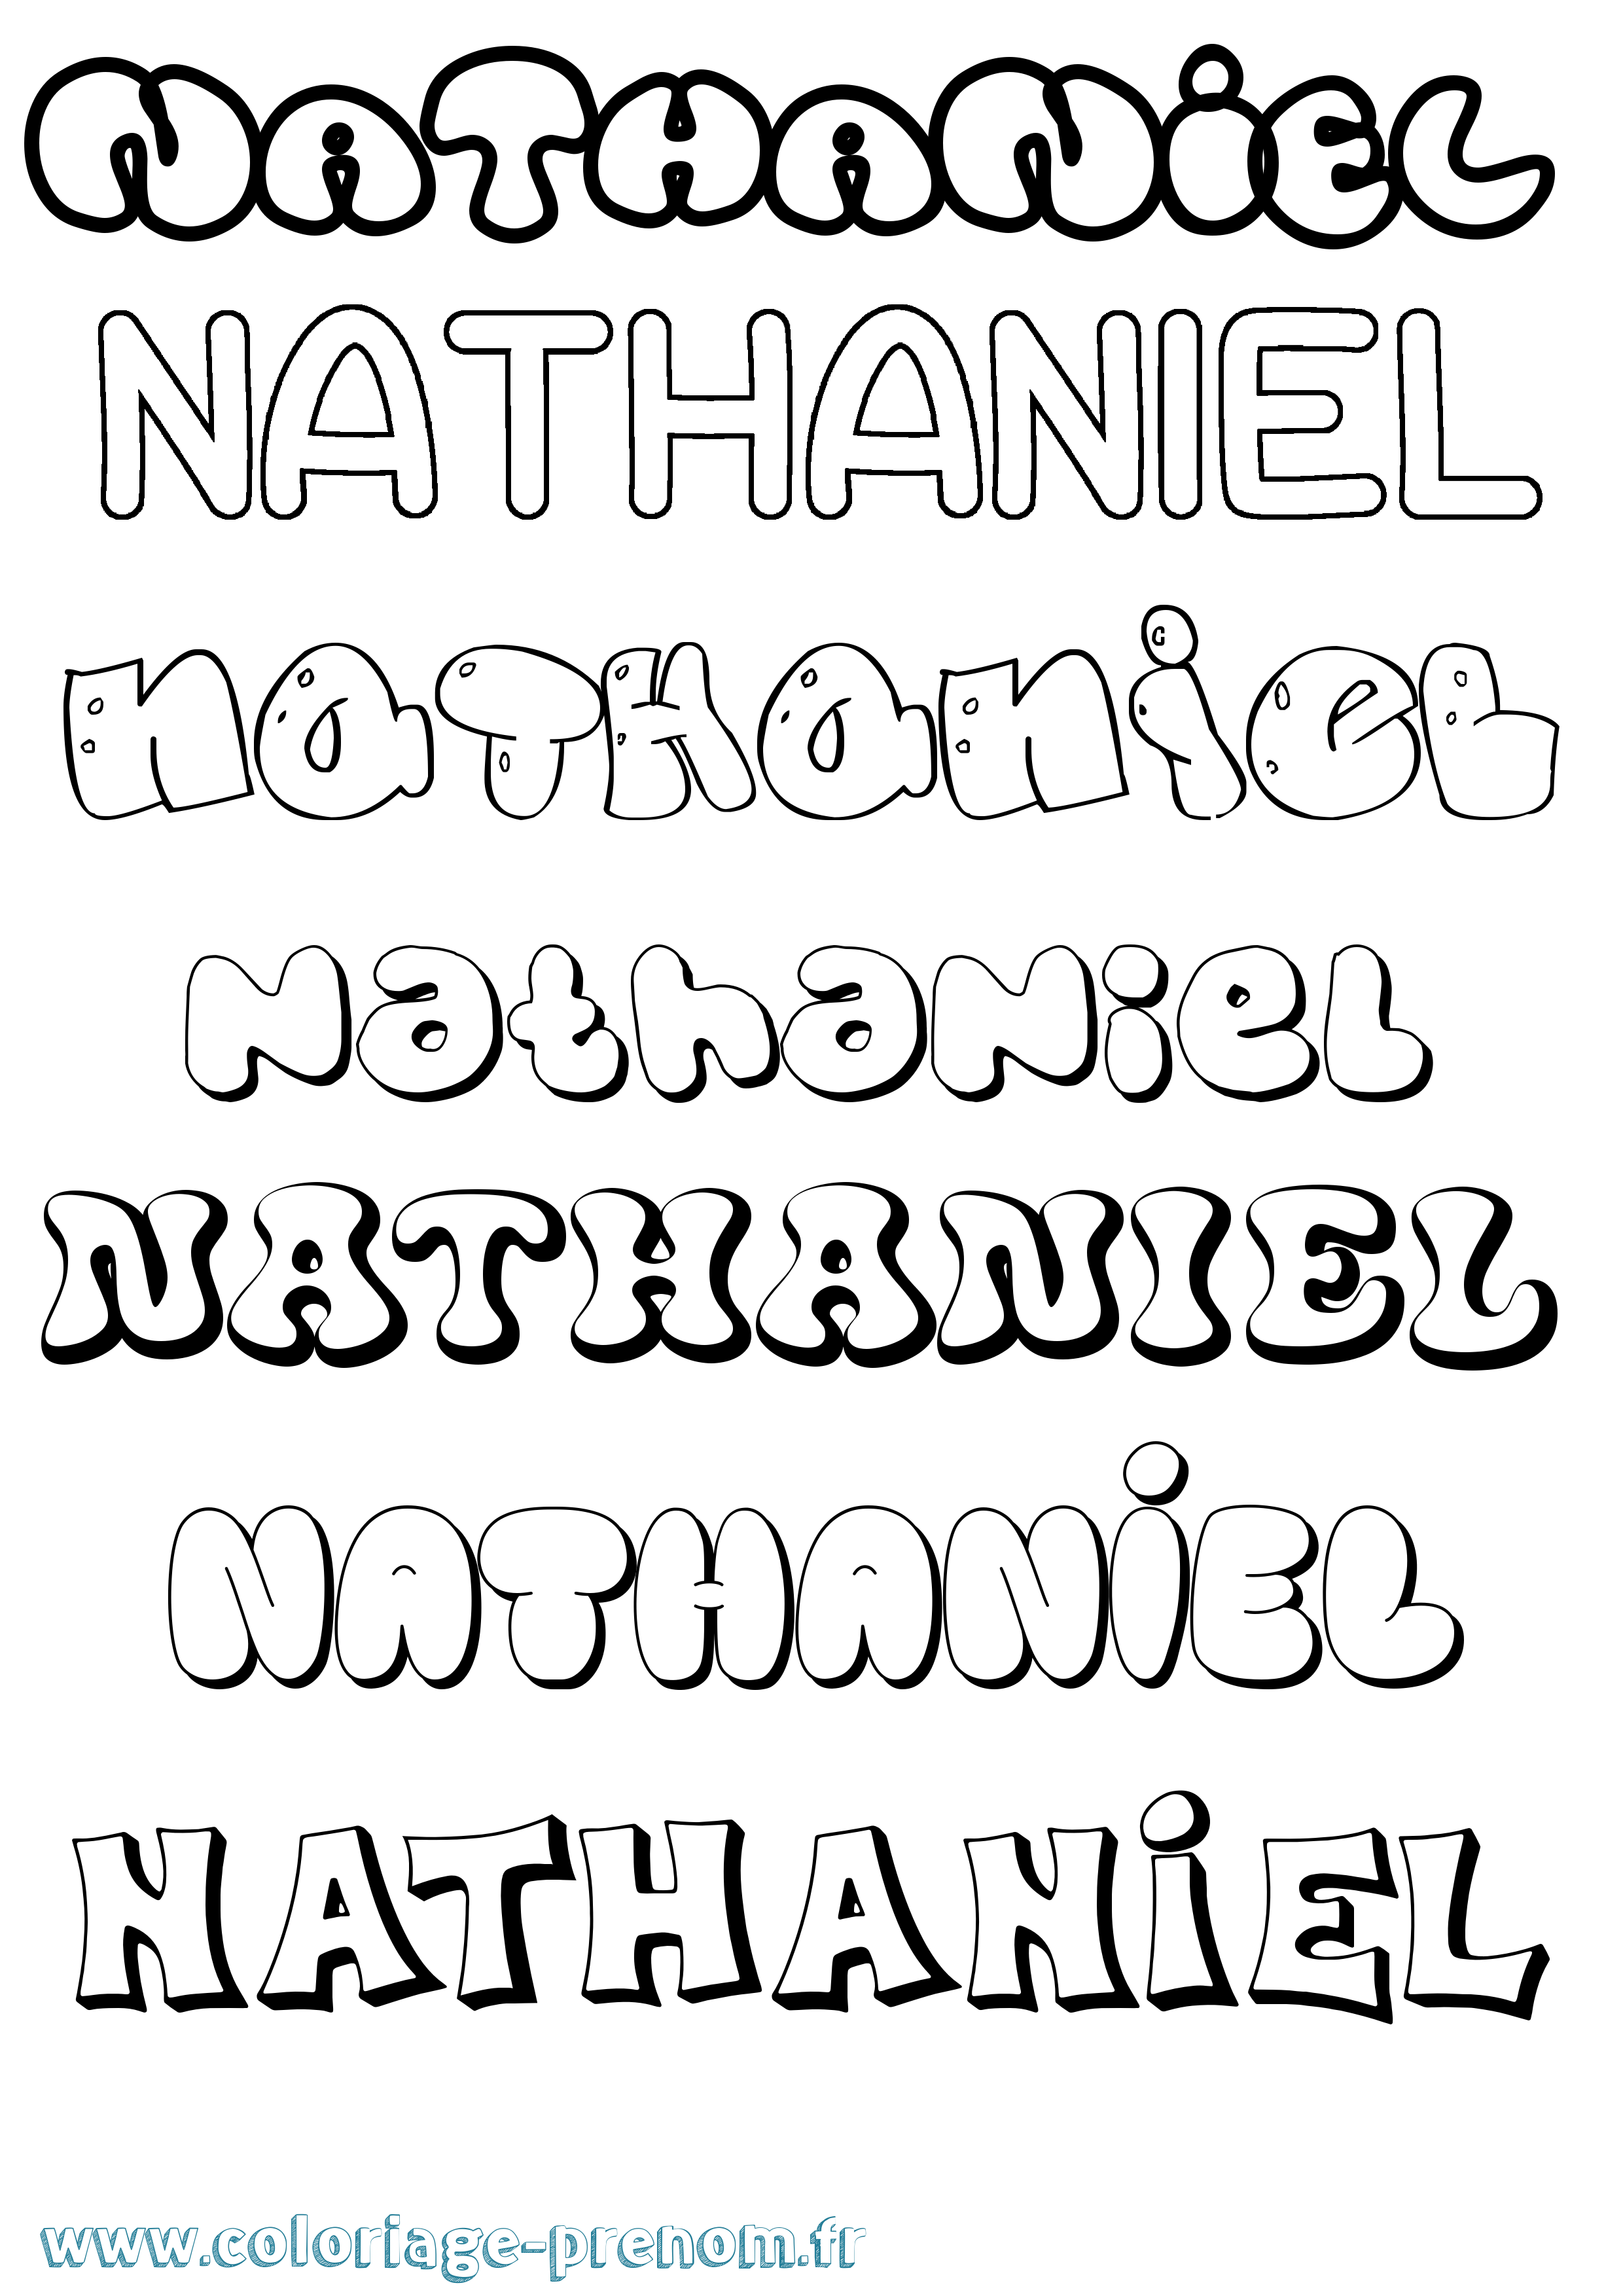 Coloriage prénom Nathaniel Bubble